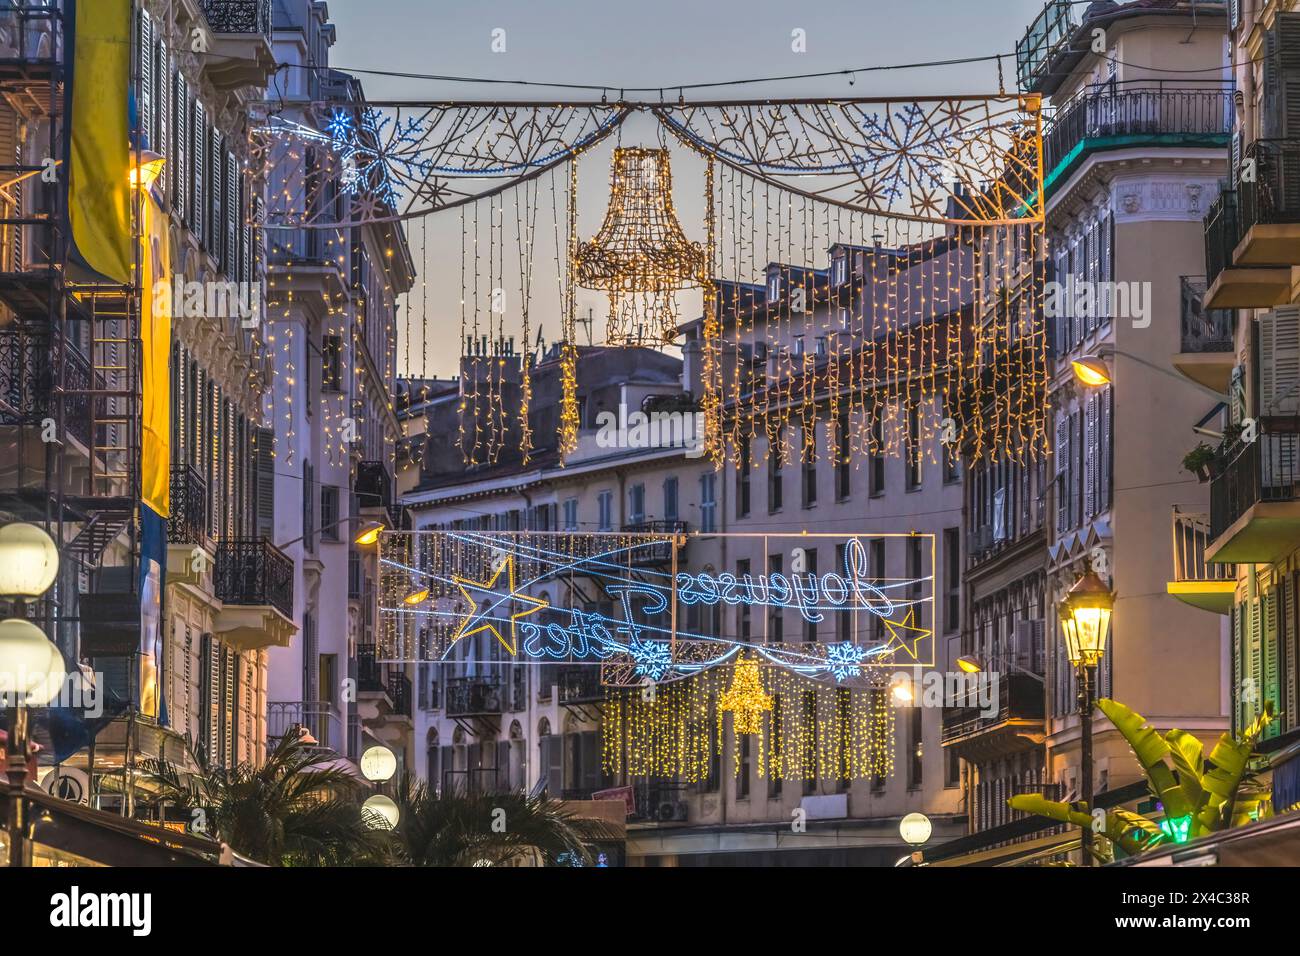 Décoration colorée de Noël illuminée, Nice, Côte d'Azur, France Banque D'Images